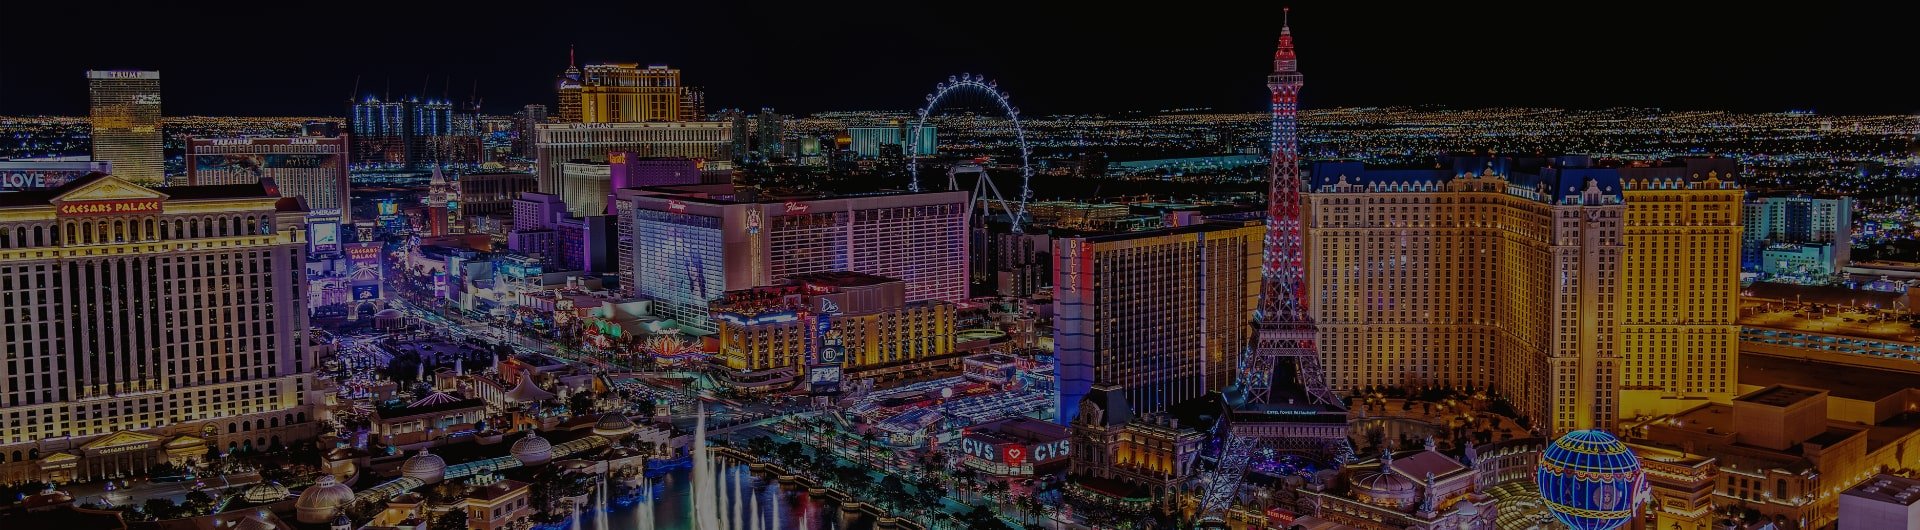 The Las Vegas Strip lit up at night.